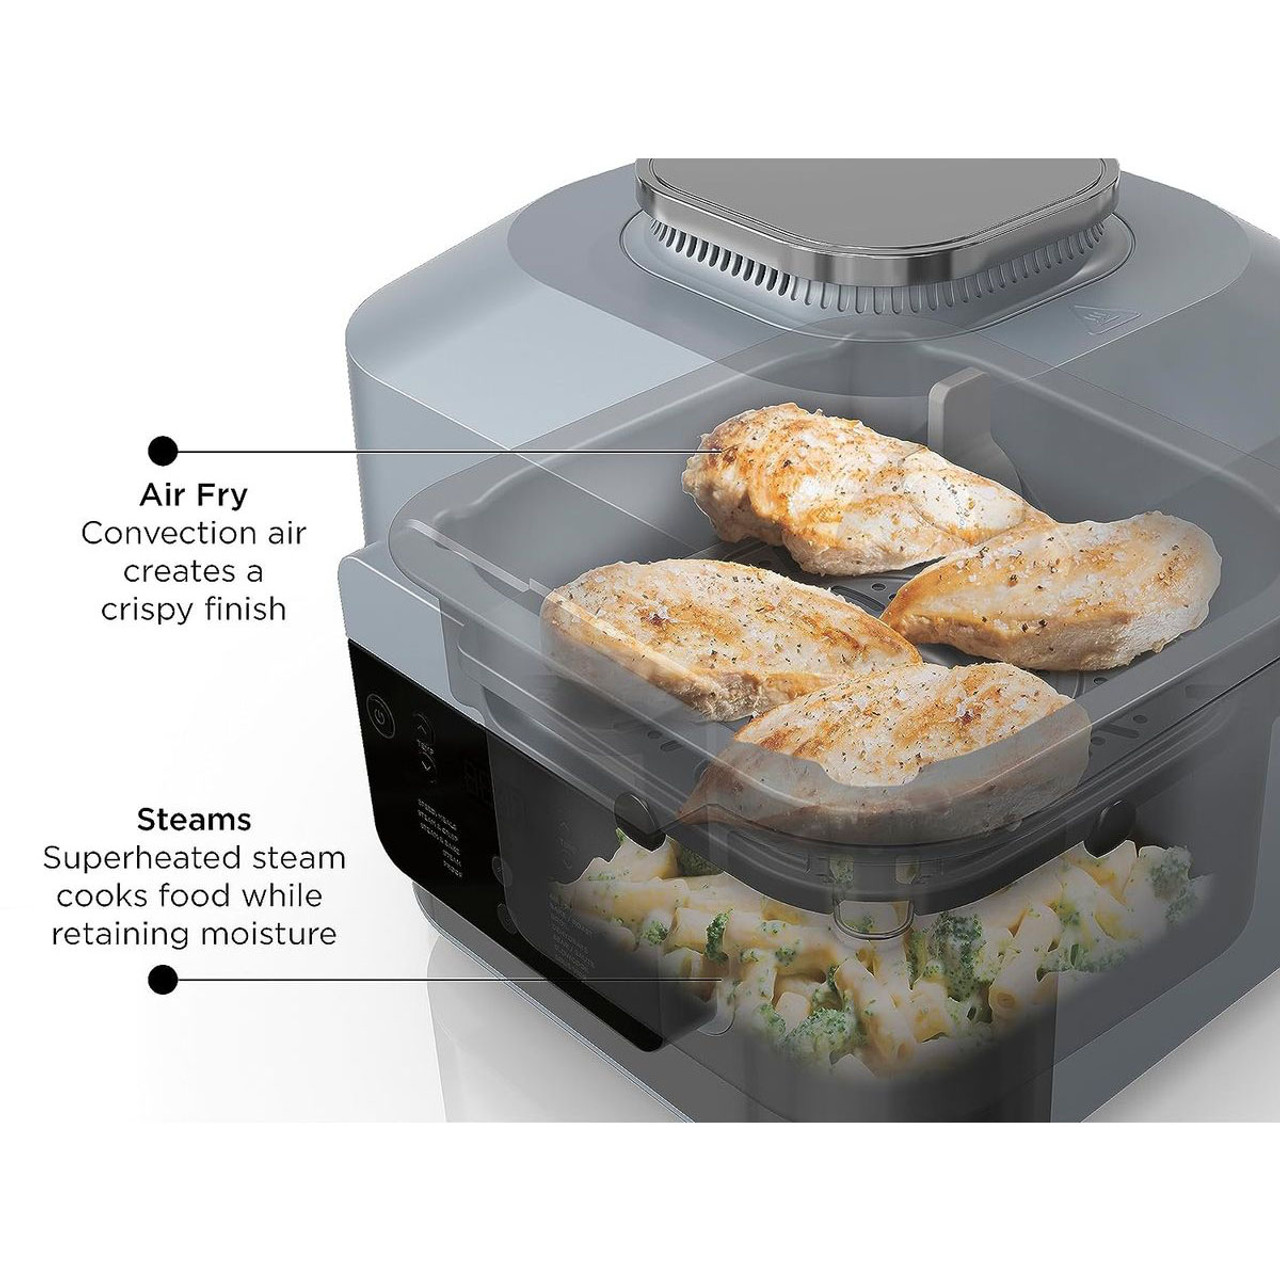 Ninja® Speedi™ Rapid Cooker & Air Fryer product image